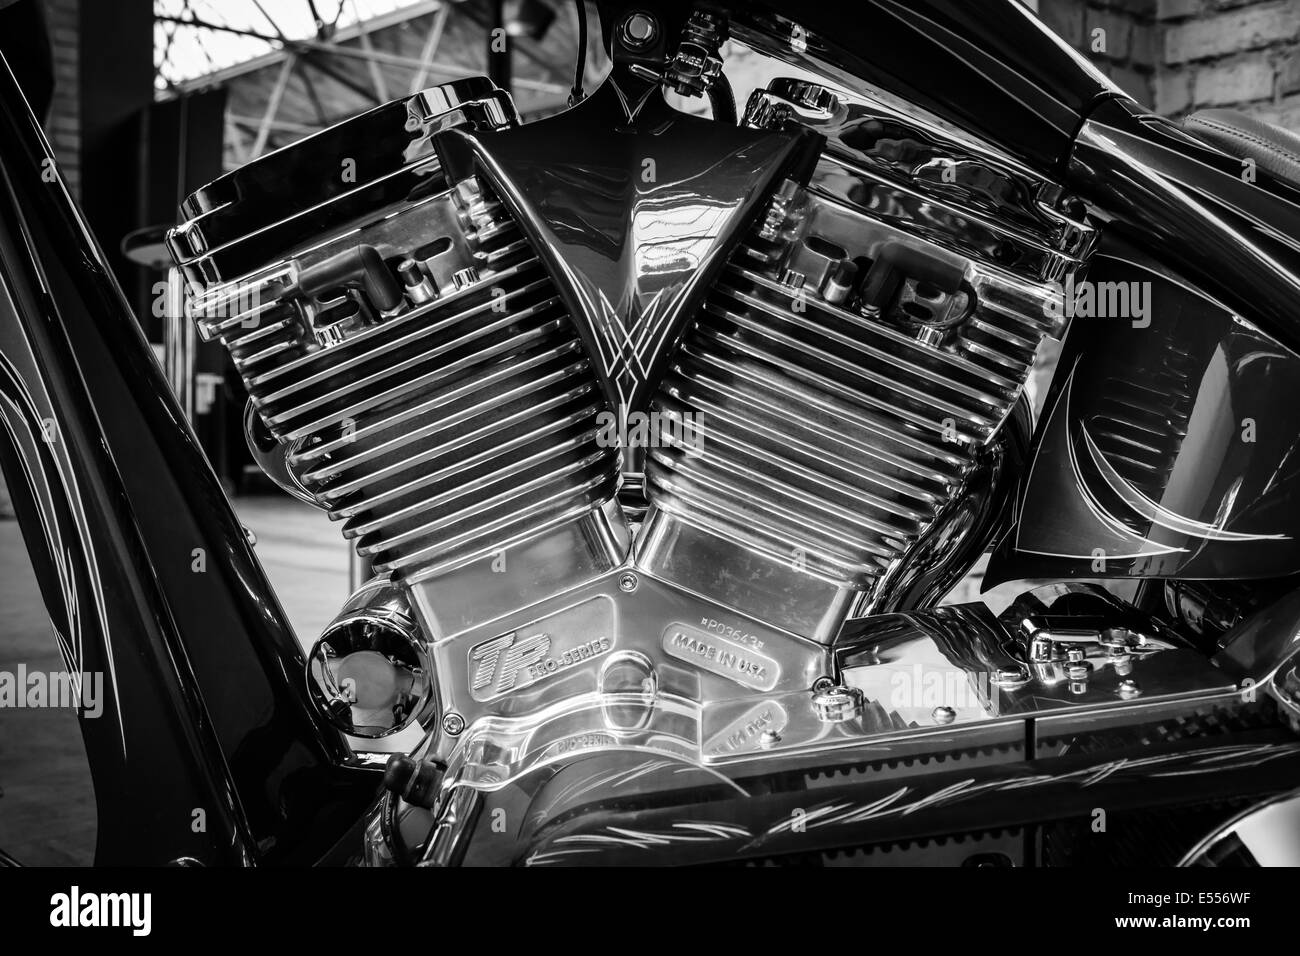 Moteur d'une moto de la main un piment (piment moteurs spéciaux), close-up. Noir et blanc. Banque D'Images